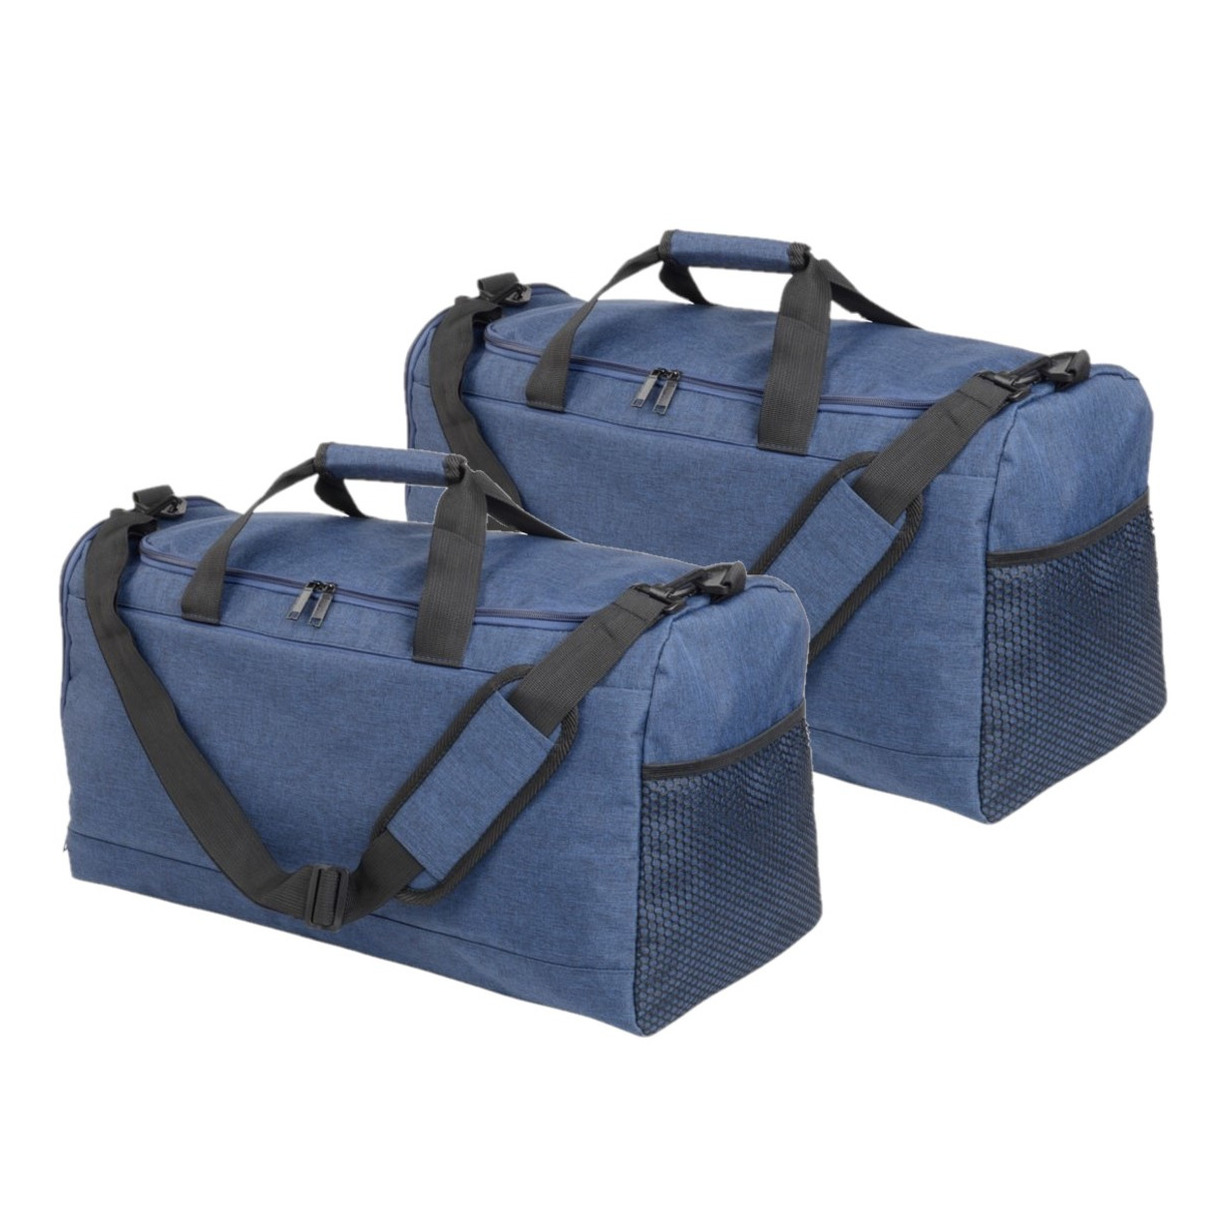 2x stuks blauwe sporttas-fitnesstas met schoenenvak 54 cm